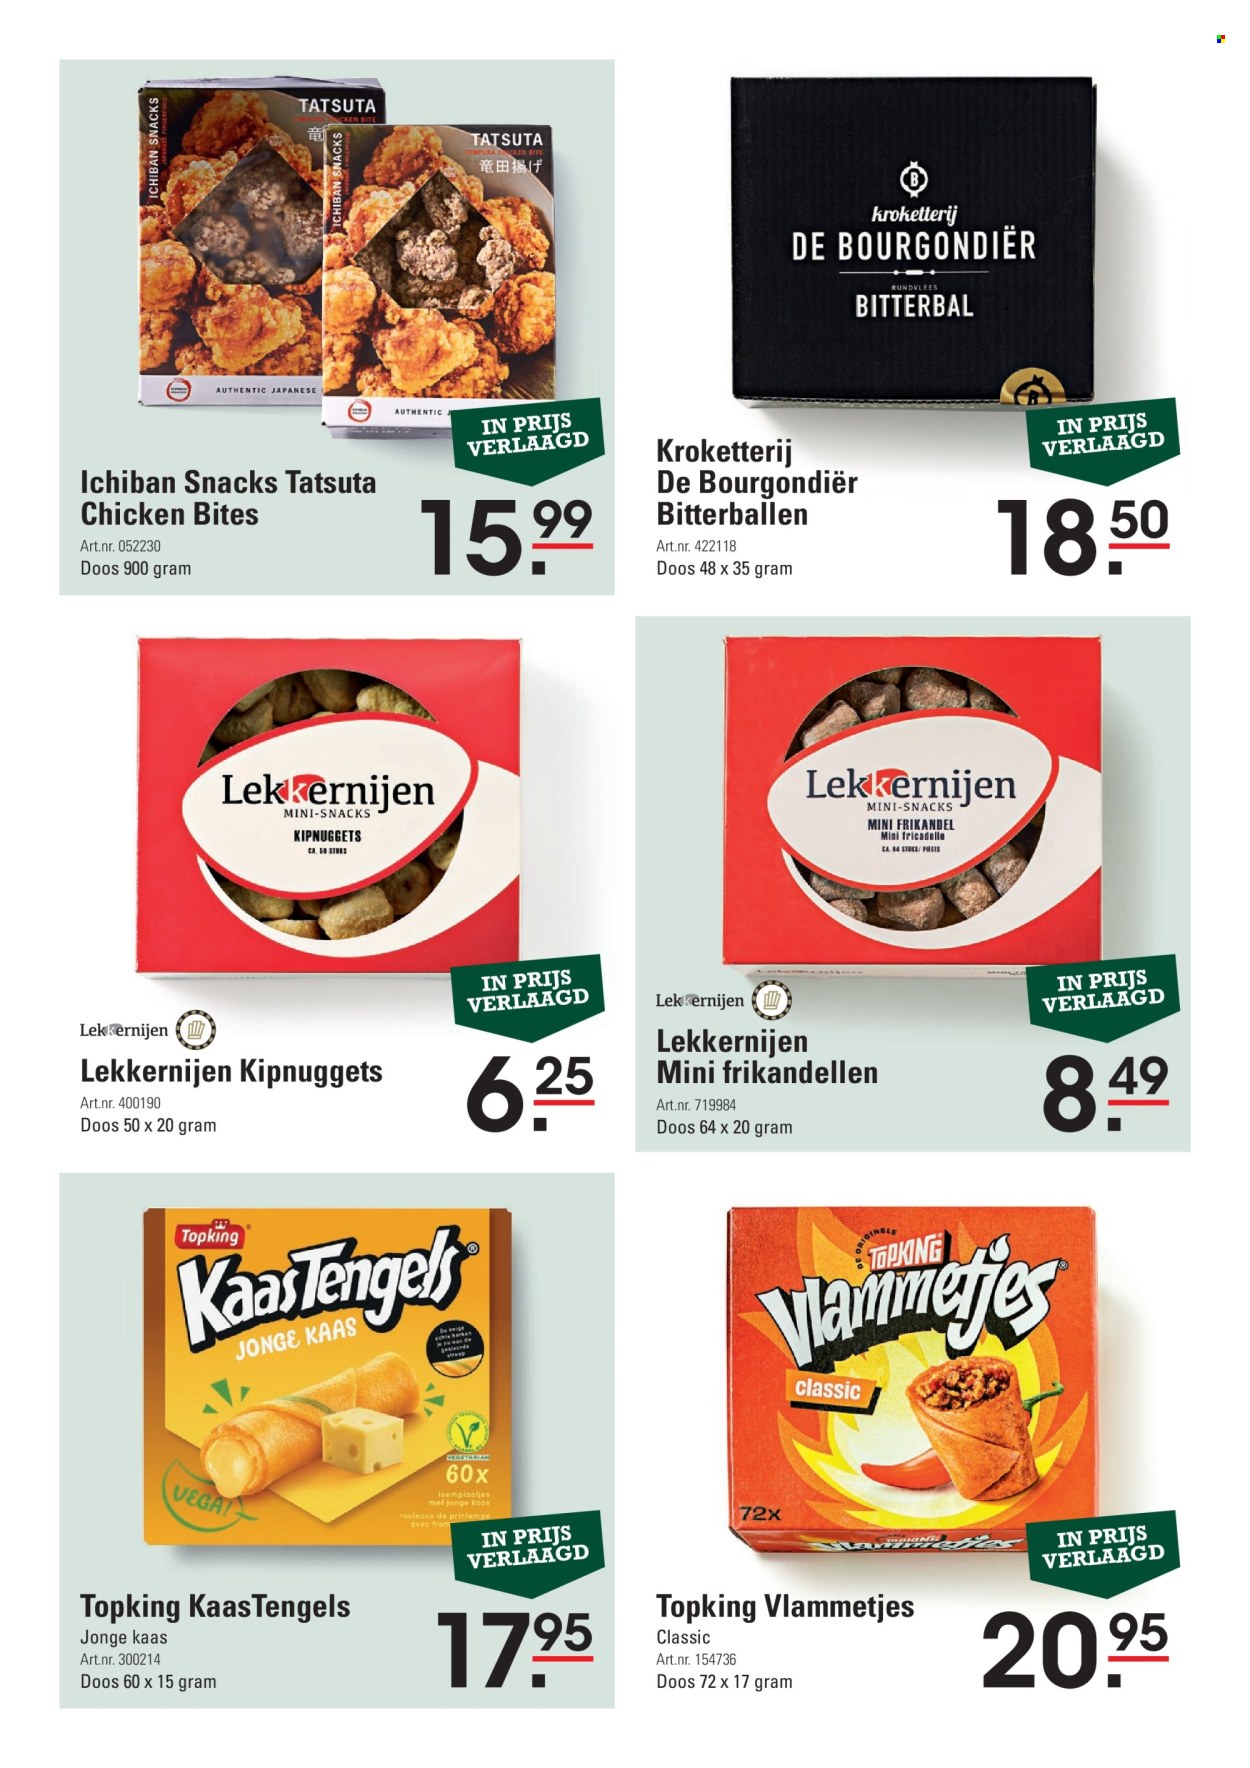 thumbnail - Sligro-aanbieding -  producten in de aanbieding - rundvlees, frikandel, Jonge Kaas, kaas, kipnuggets, Kaastengels. Pagina 6.